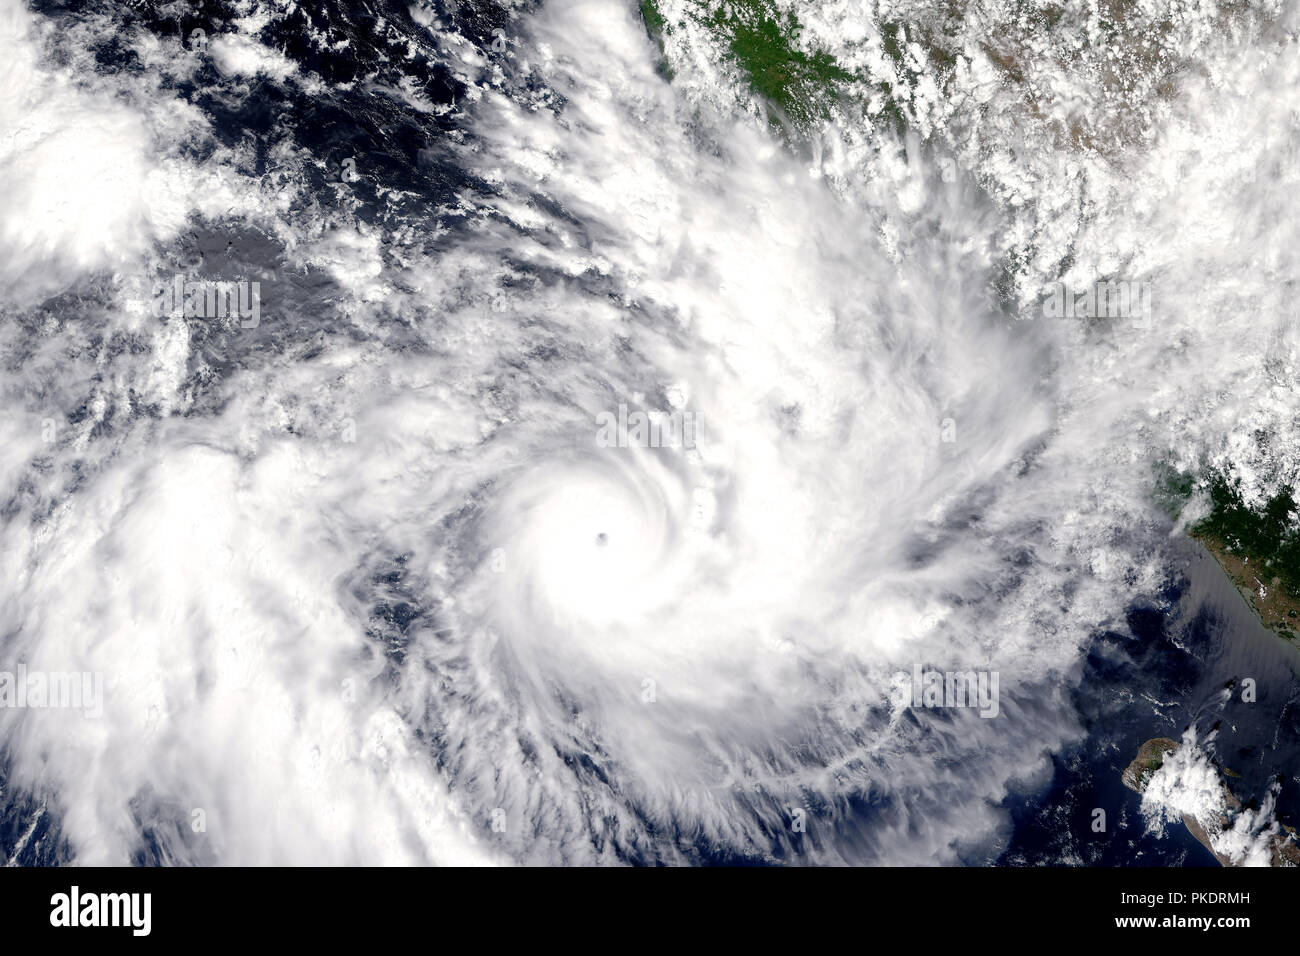 Hurrikan auf der Erde gesehen vom Weltraum aus. Taifun über den Planeten Erde. Elemente dieses Bild sind von der NASA eingerichtet. Stockfoto